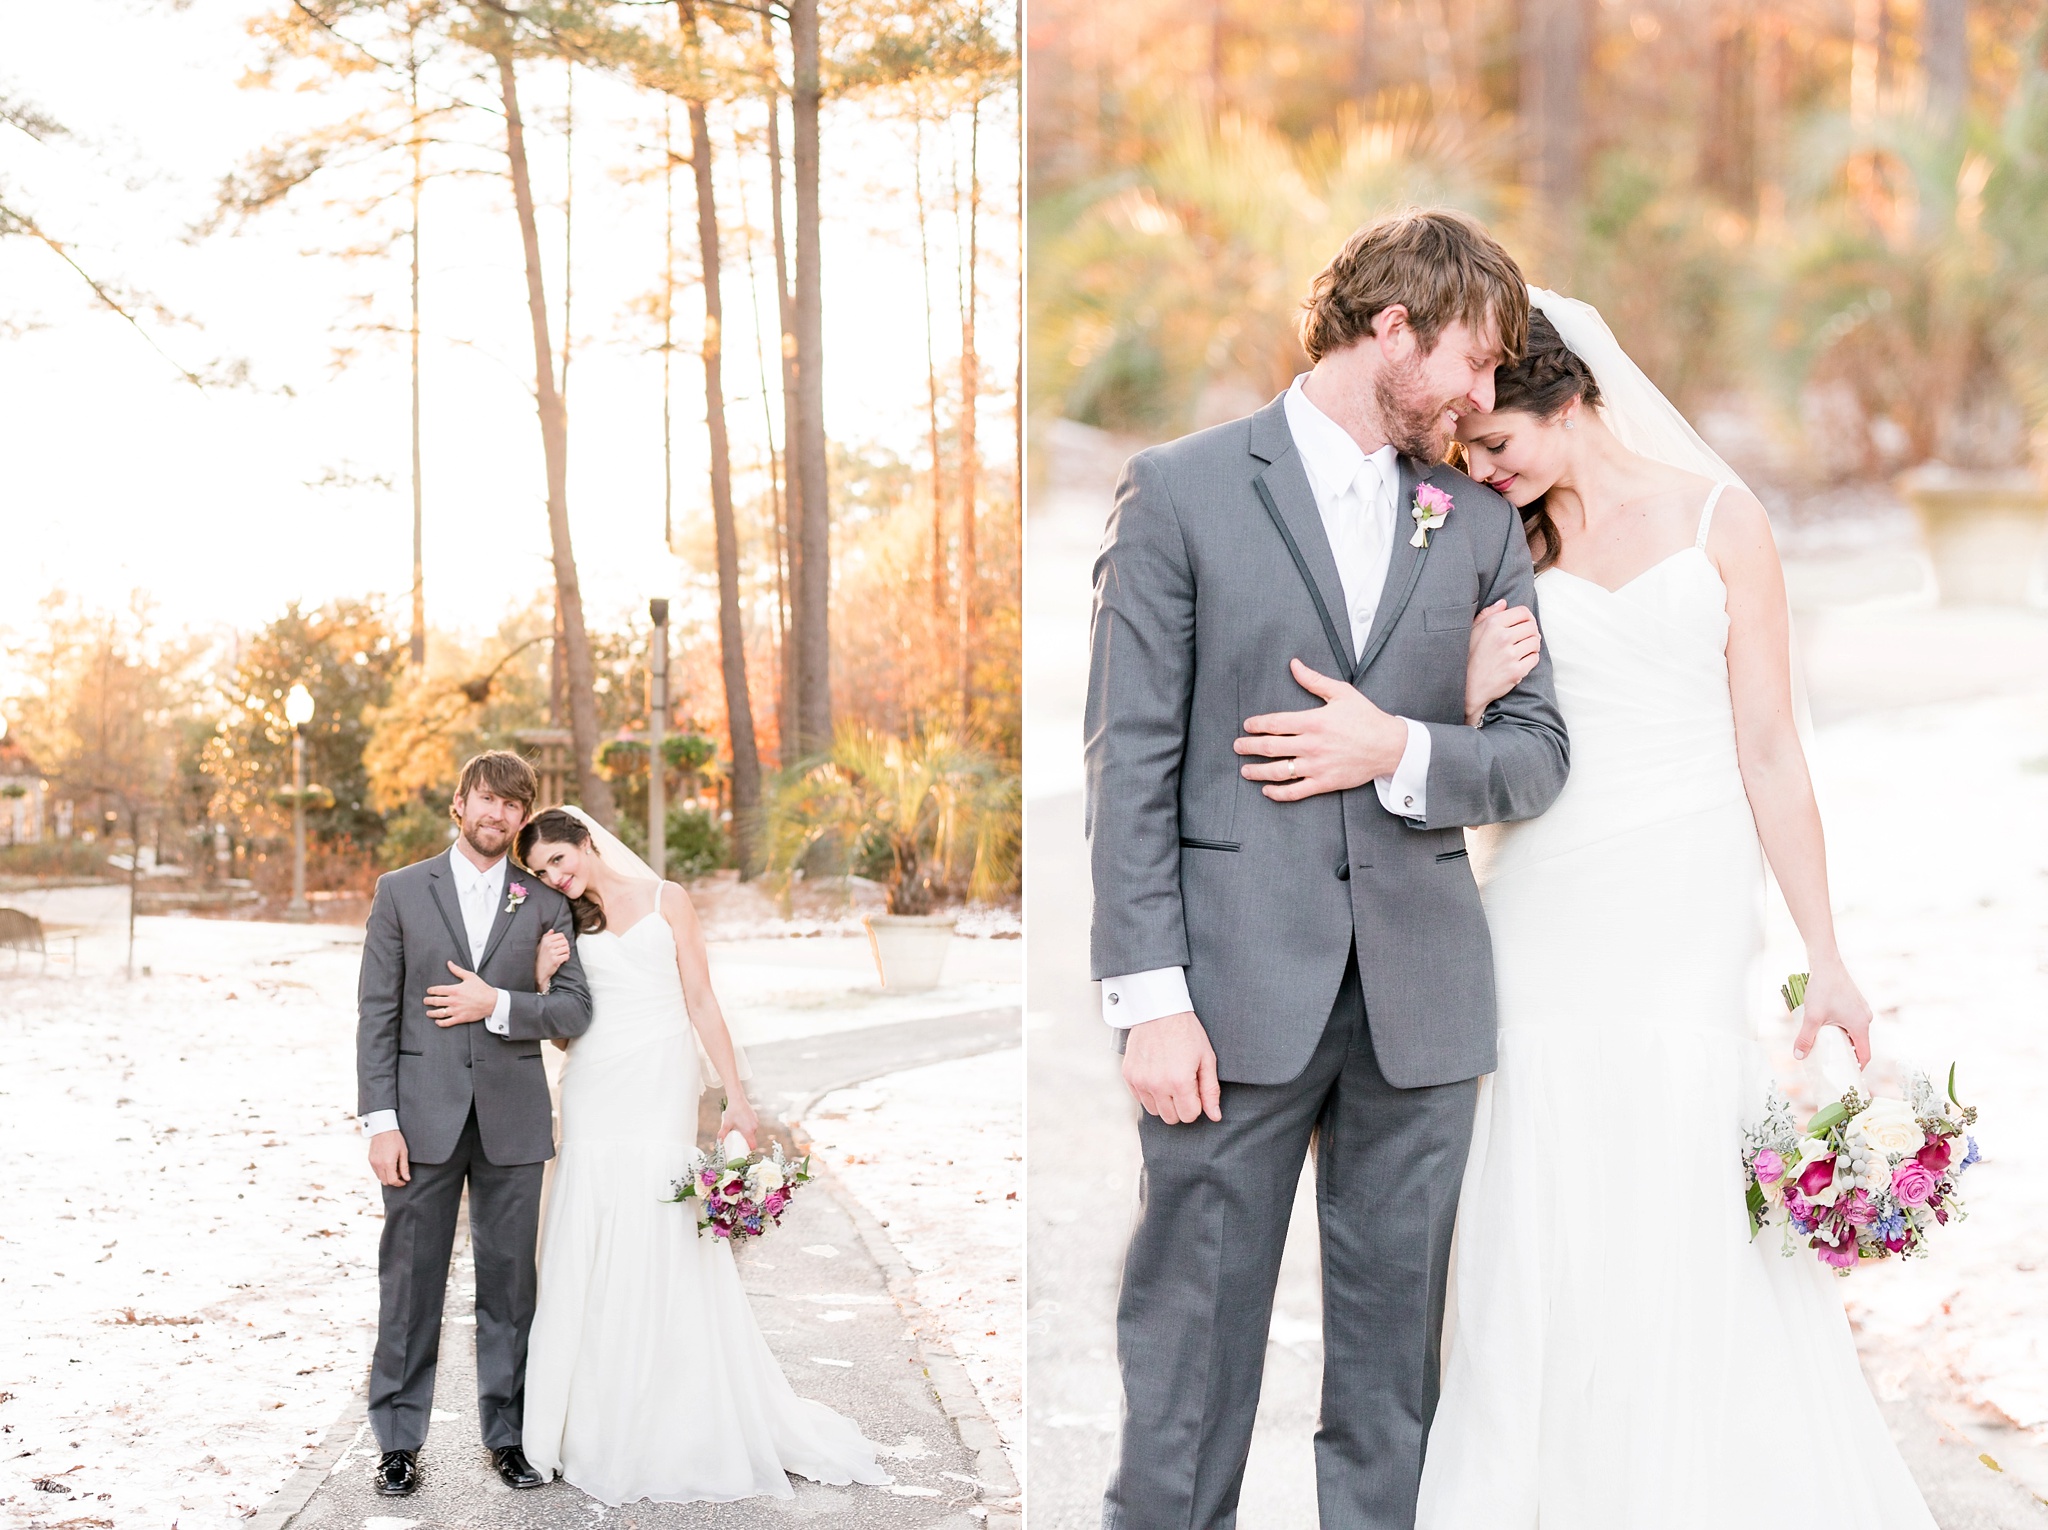 Snowy Winter Aldridge Gardens Wedding | Birmingham Alabama Wedding Photographers_0044.jpg